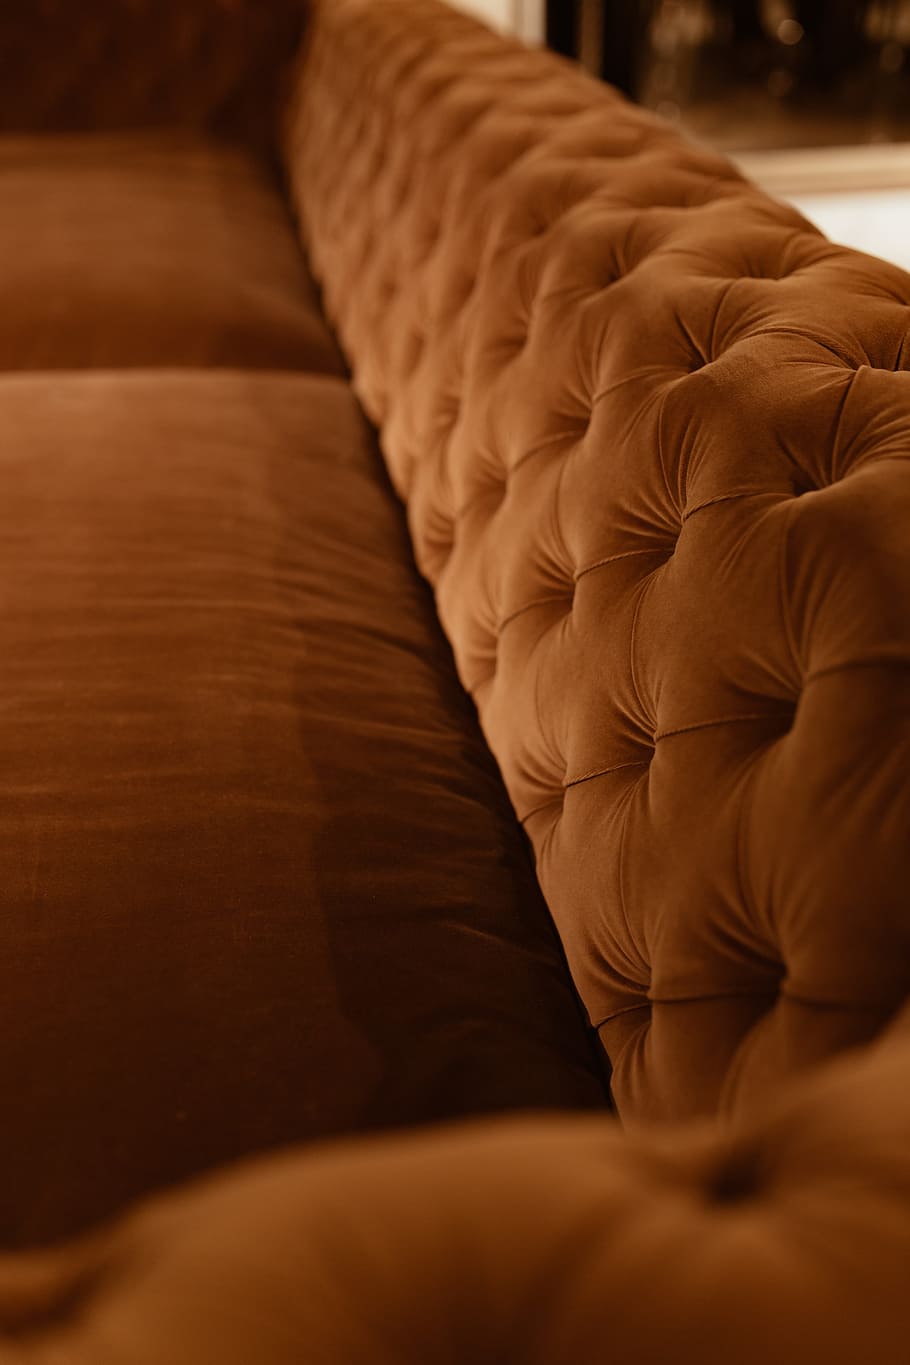 sofa beludru oranye, sofa, furnitur, rumah, modern, mewah, bantal, nyaman, mahal, beludru